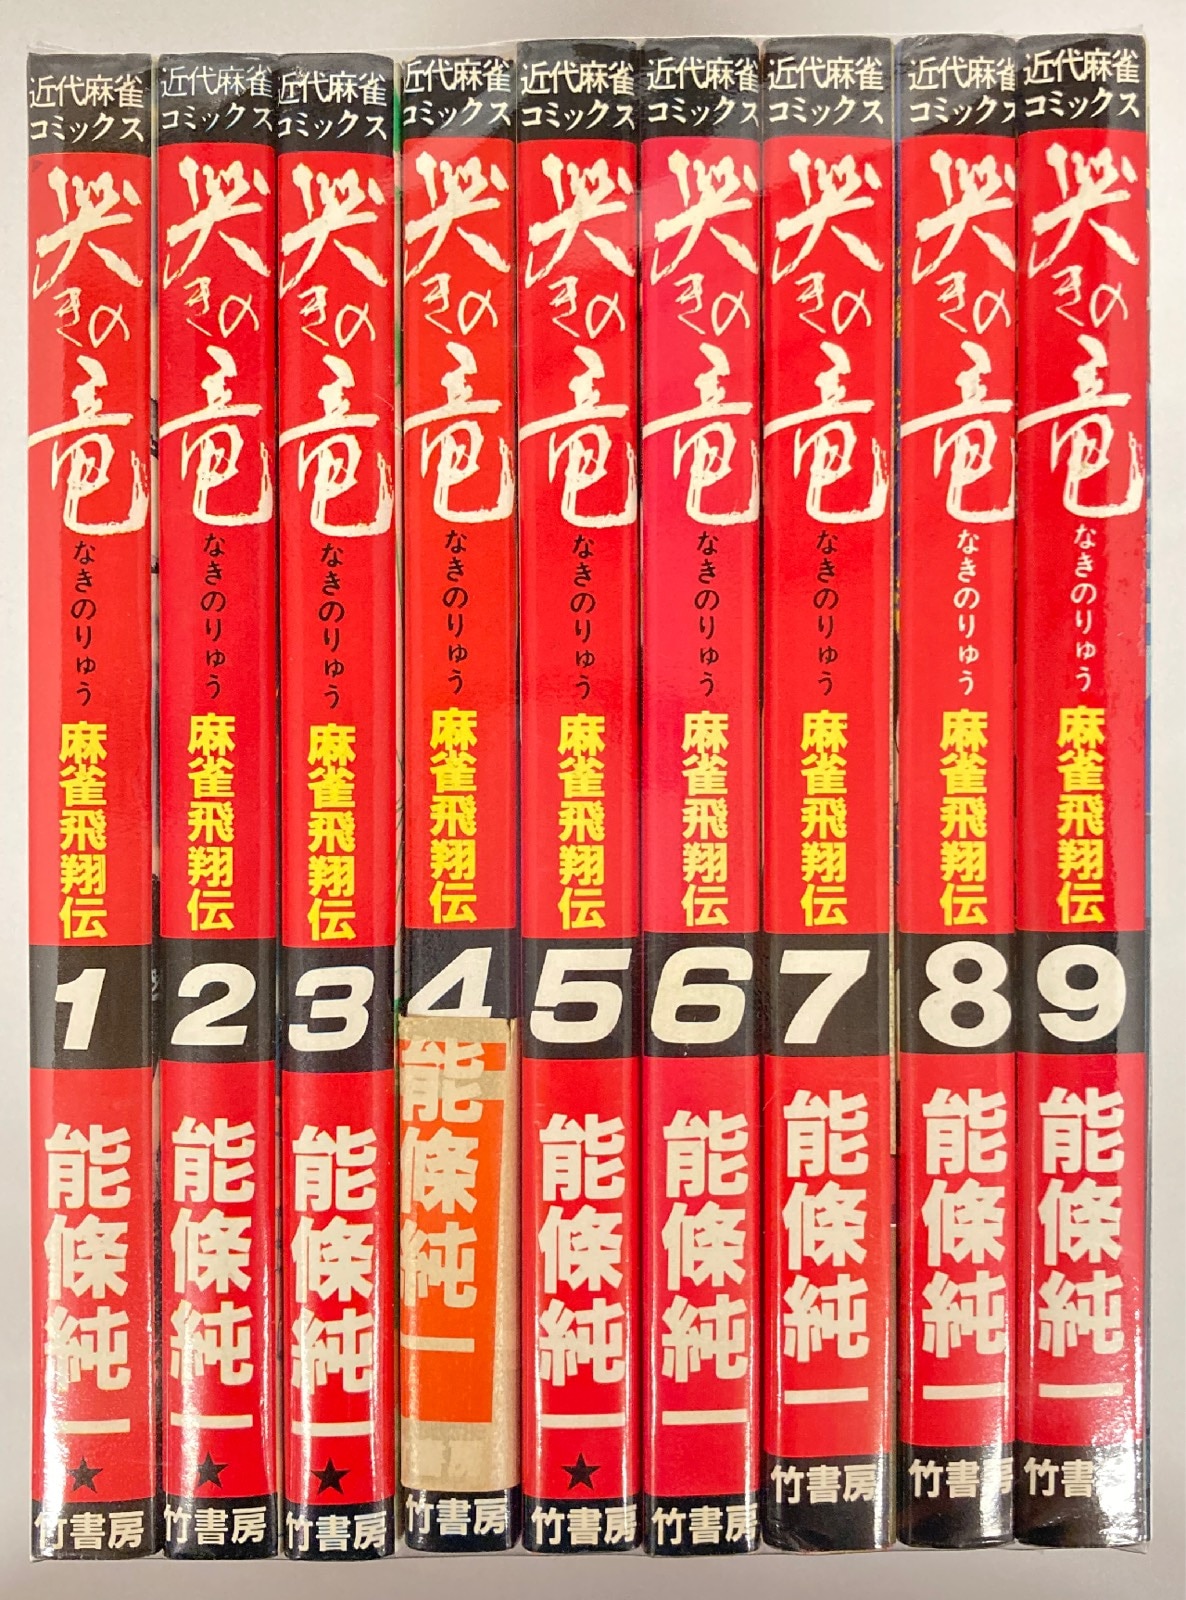 竹書房 近代麻雀コミックス 能條純一 哭きの竜 全9巻 セット